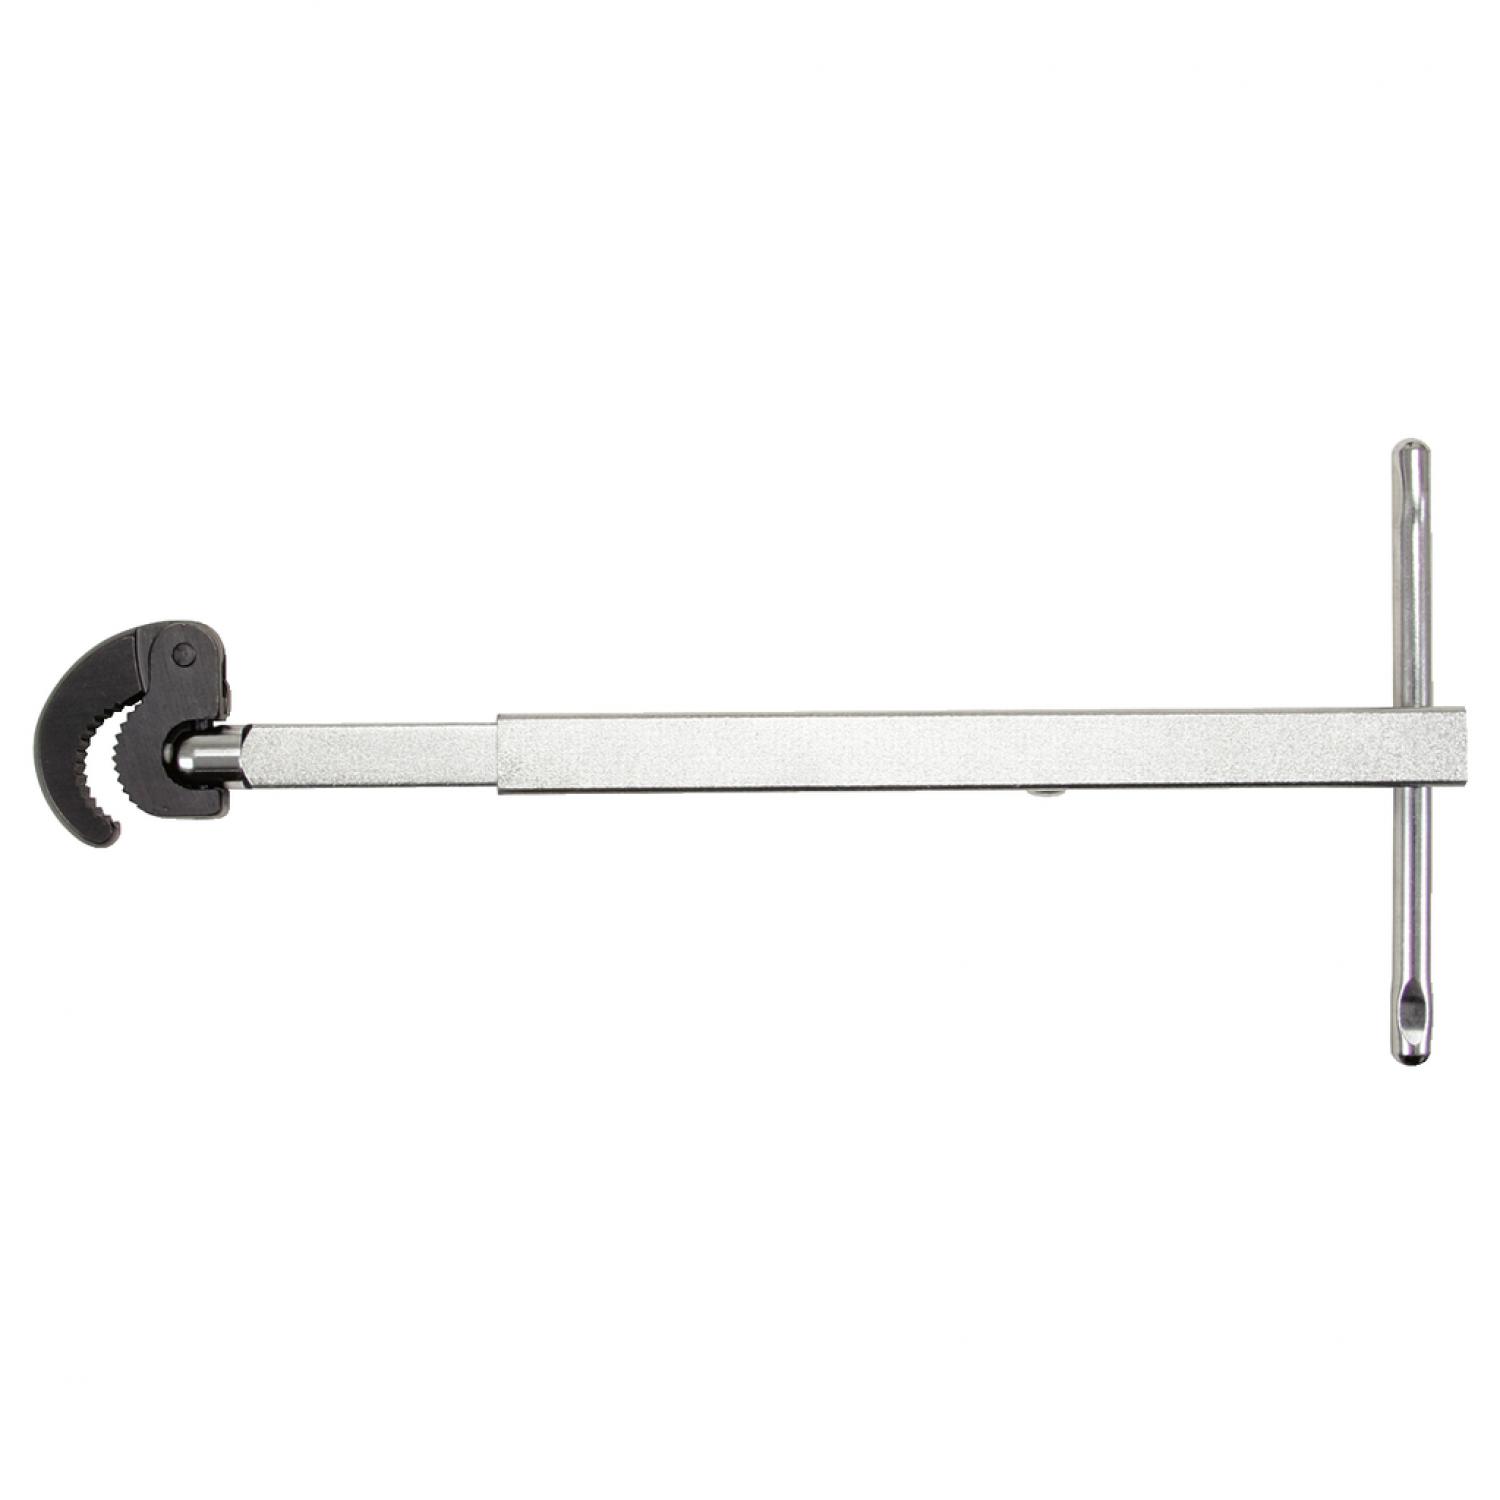 Телескопический гаечный ключ для кранов с вертикальным креплением, Ø 10-32 мм